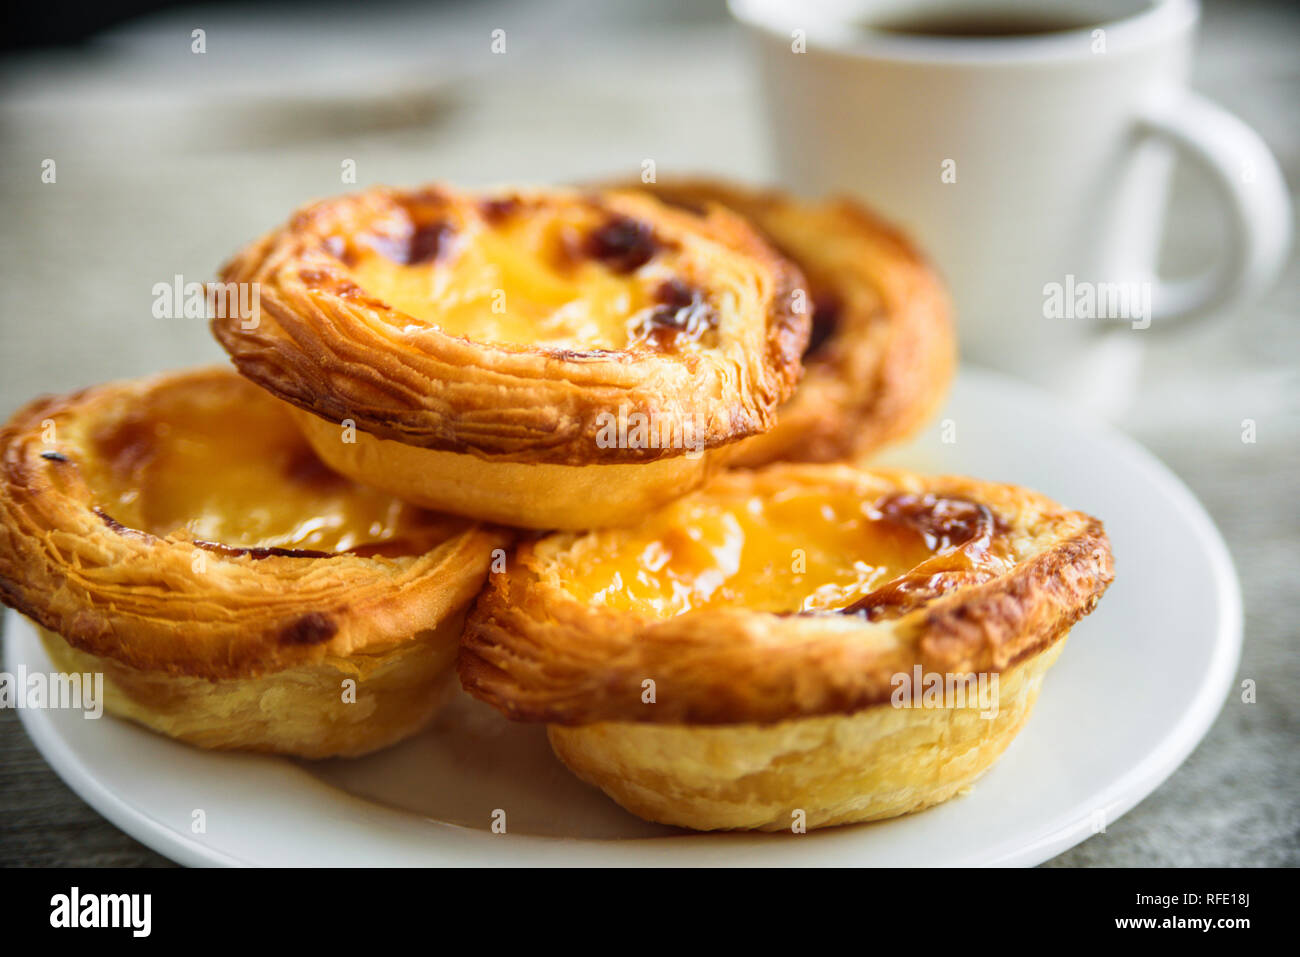 Portugal tartes oeufs pastel de nata servant sur la plaque avec du café Banque D'Images